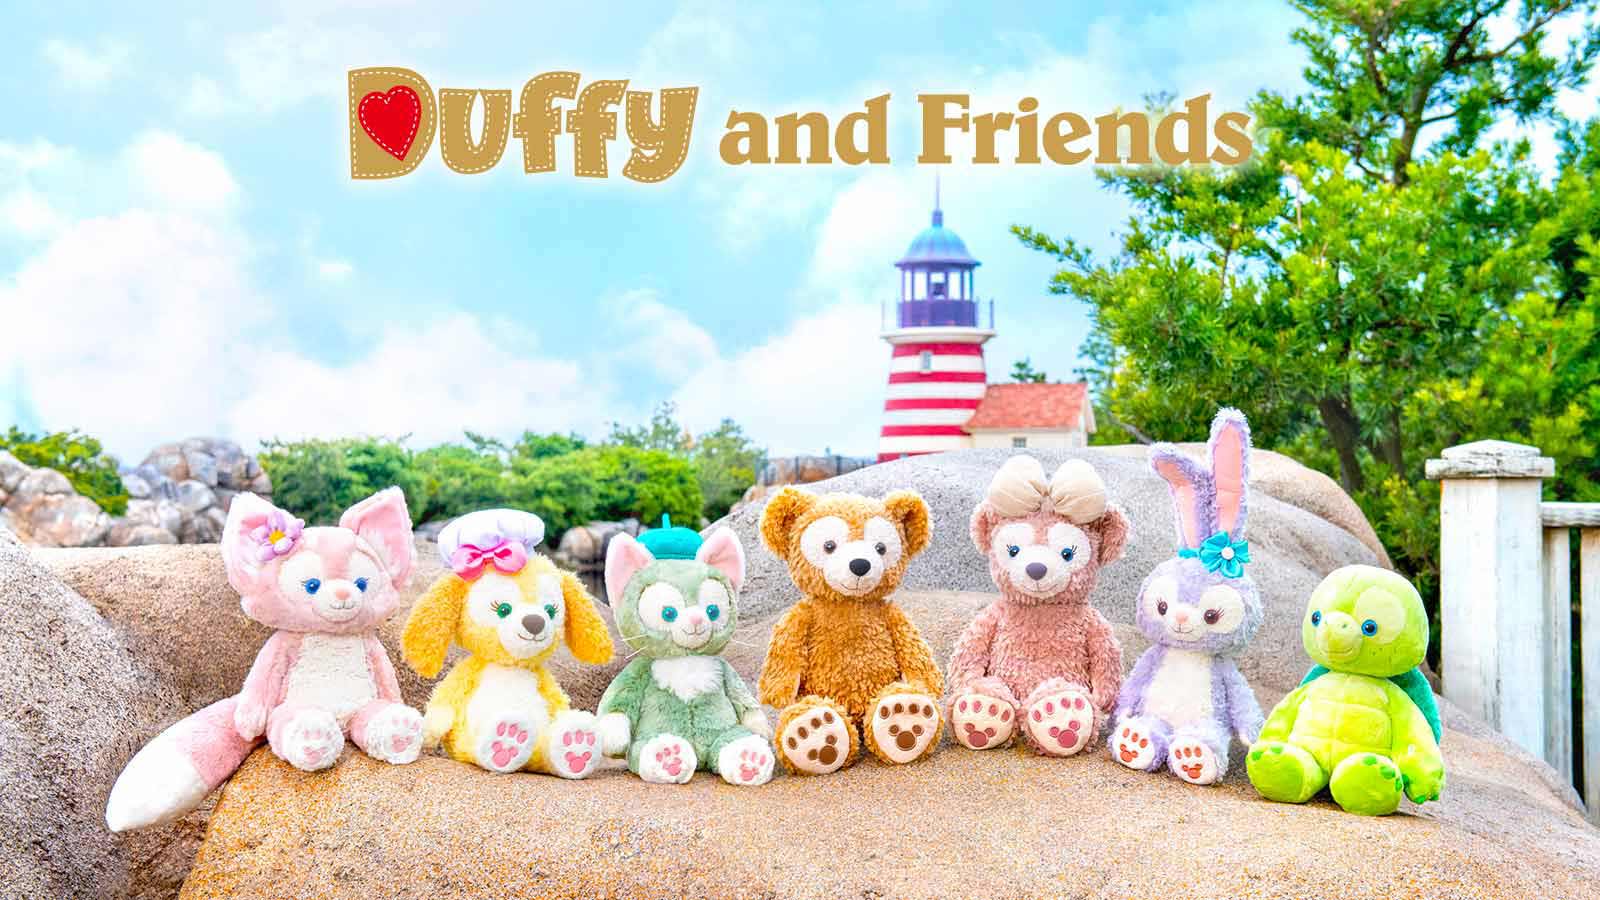 Duffy and Friends 스페셜 사이트(일본어)